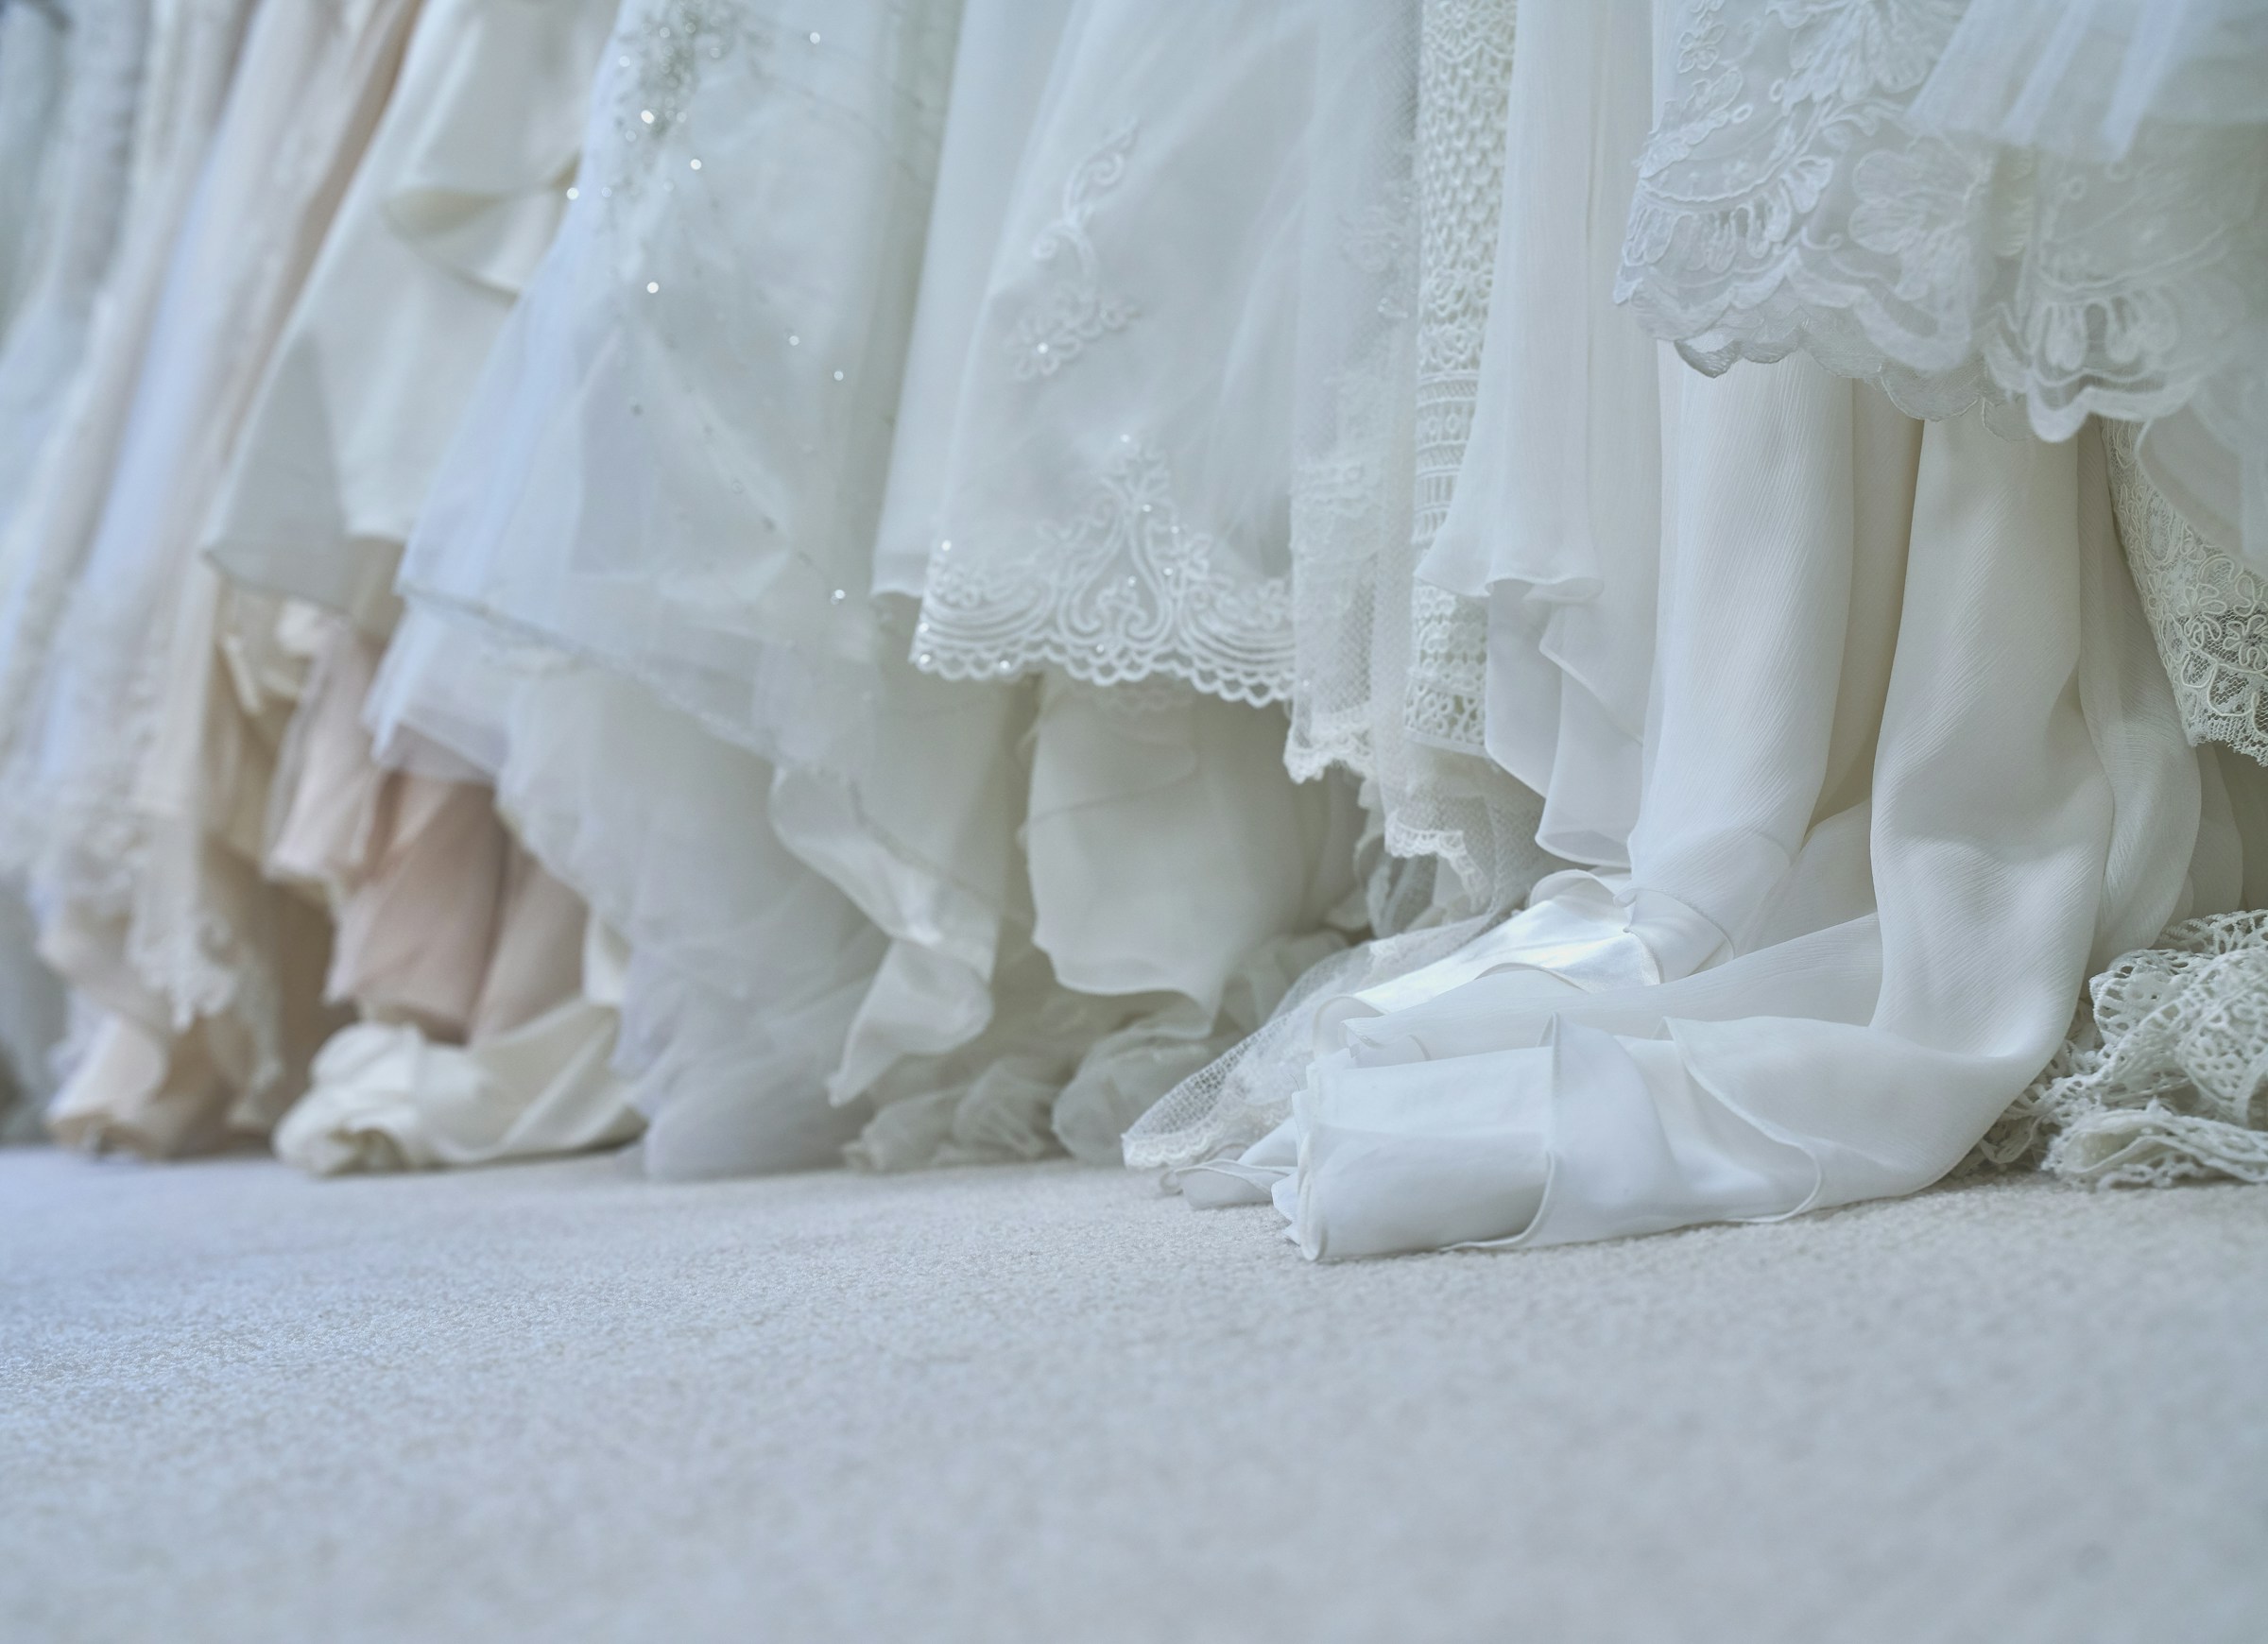 Diferentes vestidos de novia | Fuente: Unsplash